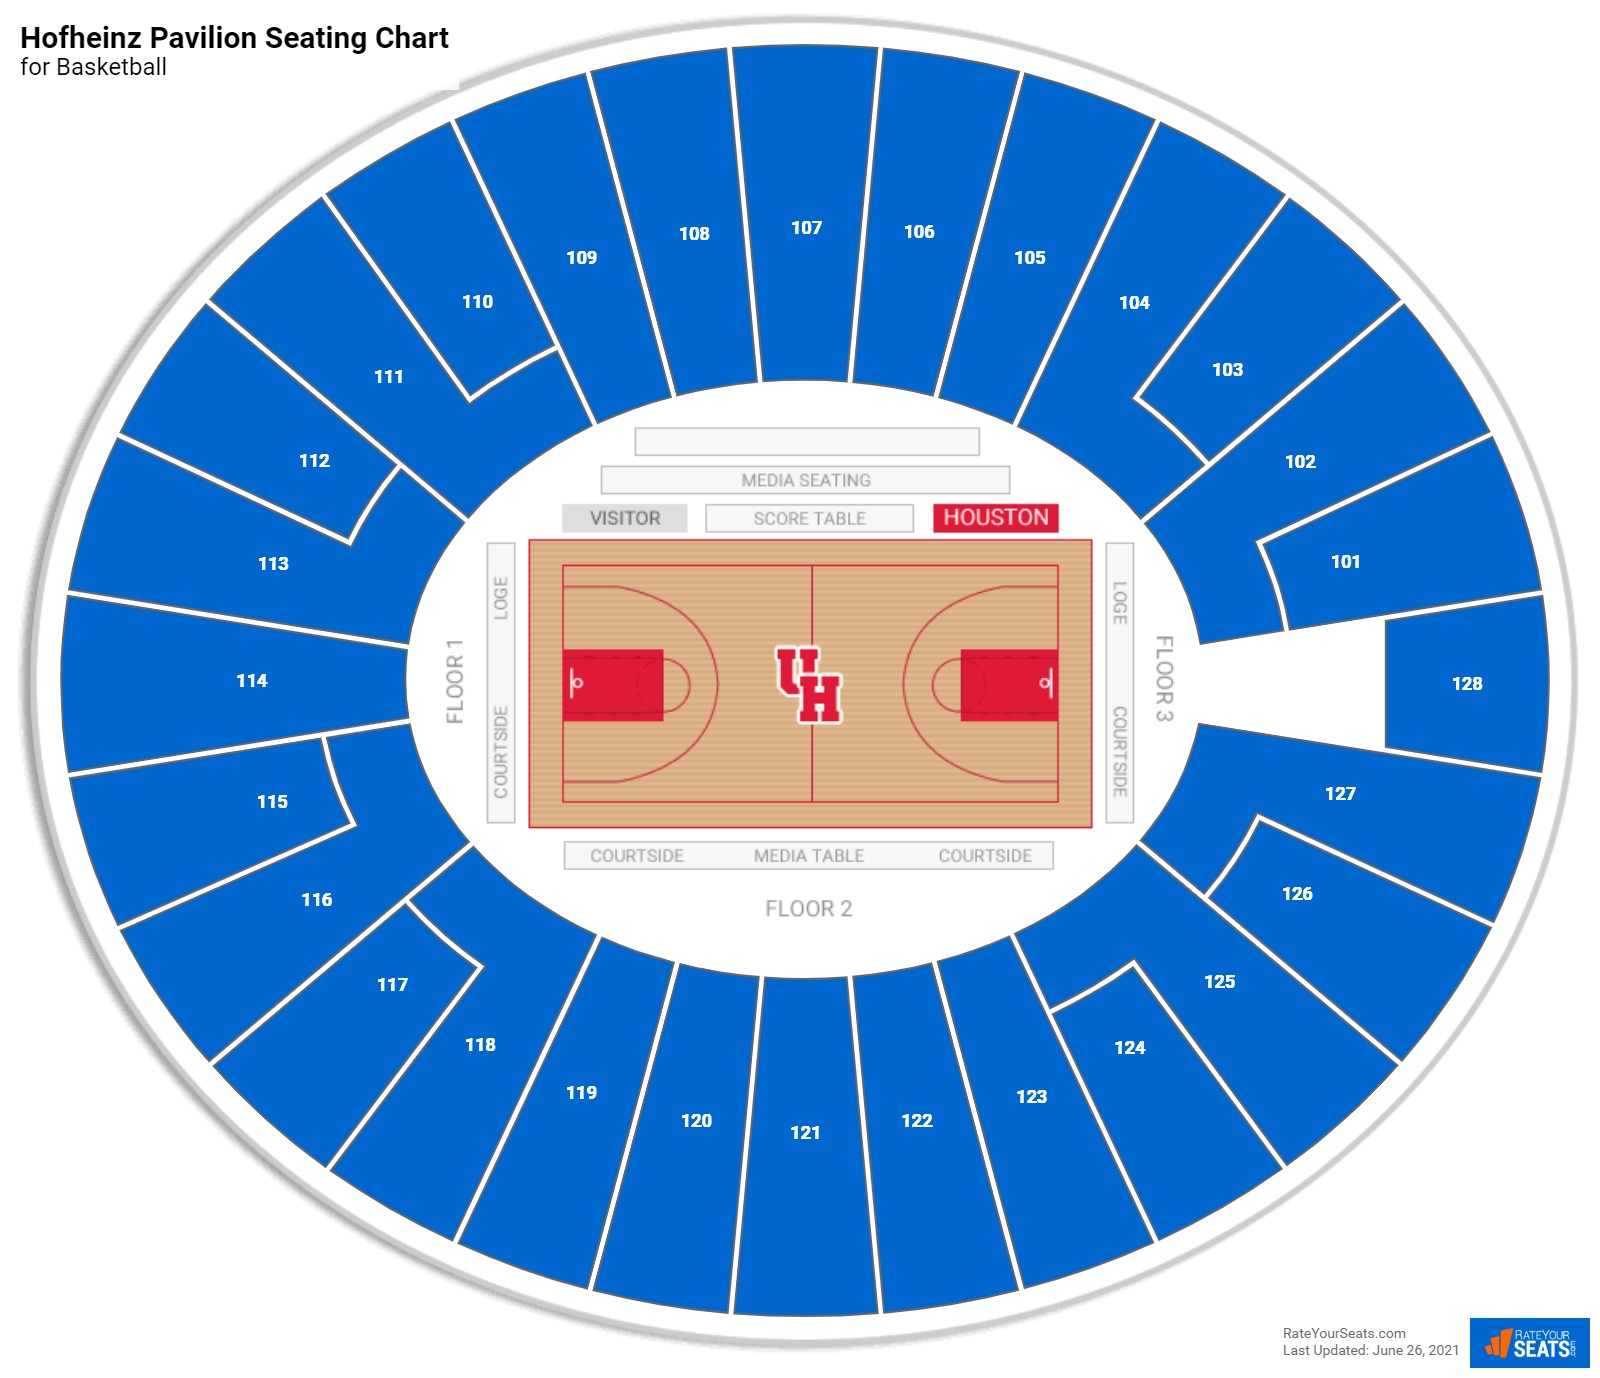 Hofheinz Pavilion Basketball Seating Chart